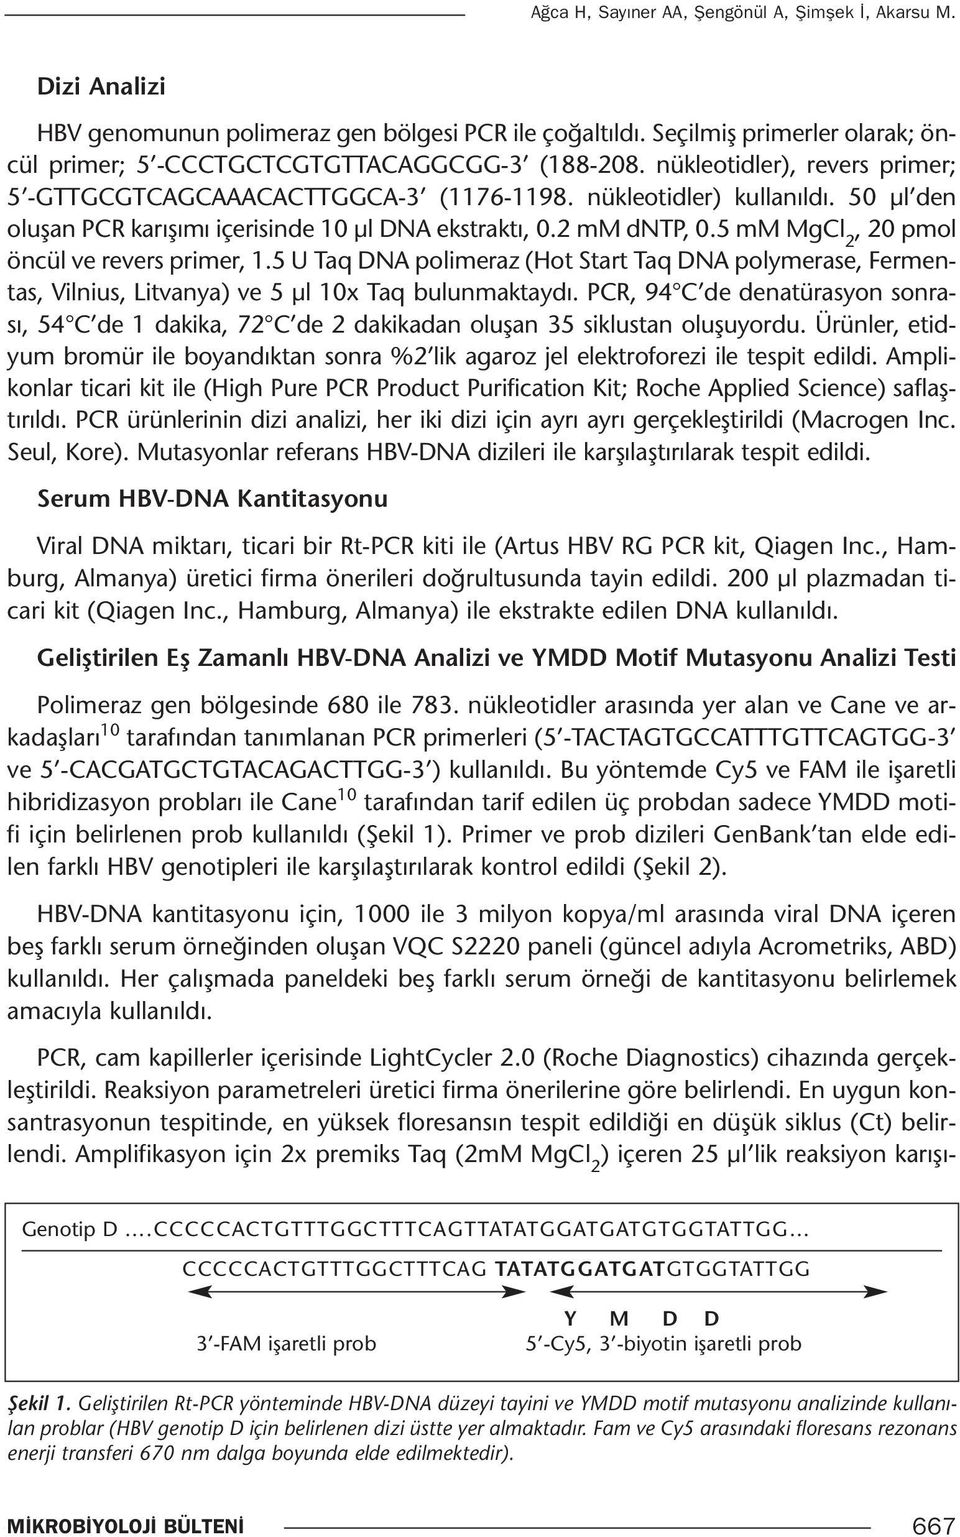 5 mm MgCl 2, 20 pmol öncül ve revers primer, 1.5 U Taq DNA polimeraz (Hot Start Taq DNA polymerase, Fermentas, Vilnius, Litvanya) ve 5 µl 10x Taq bulunmaktaydı.